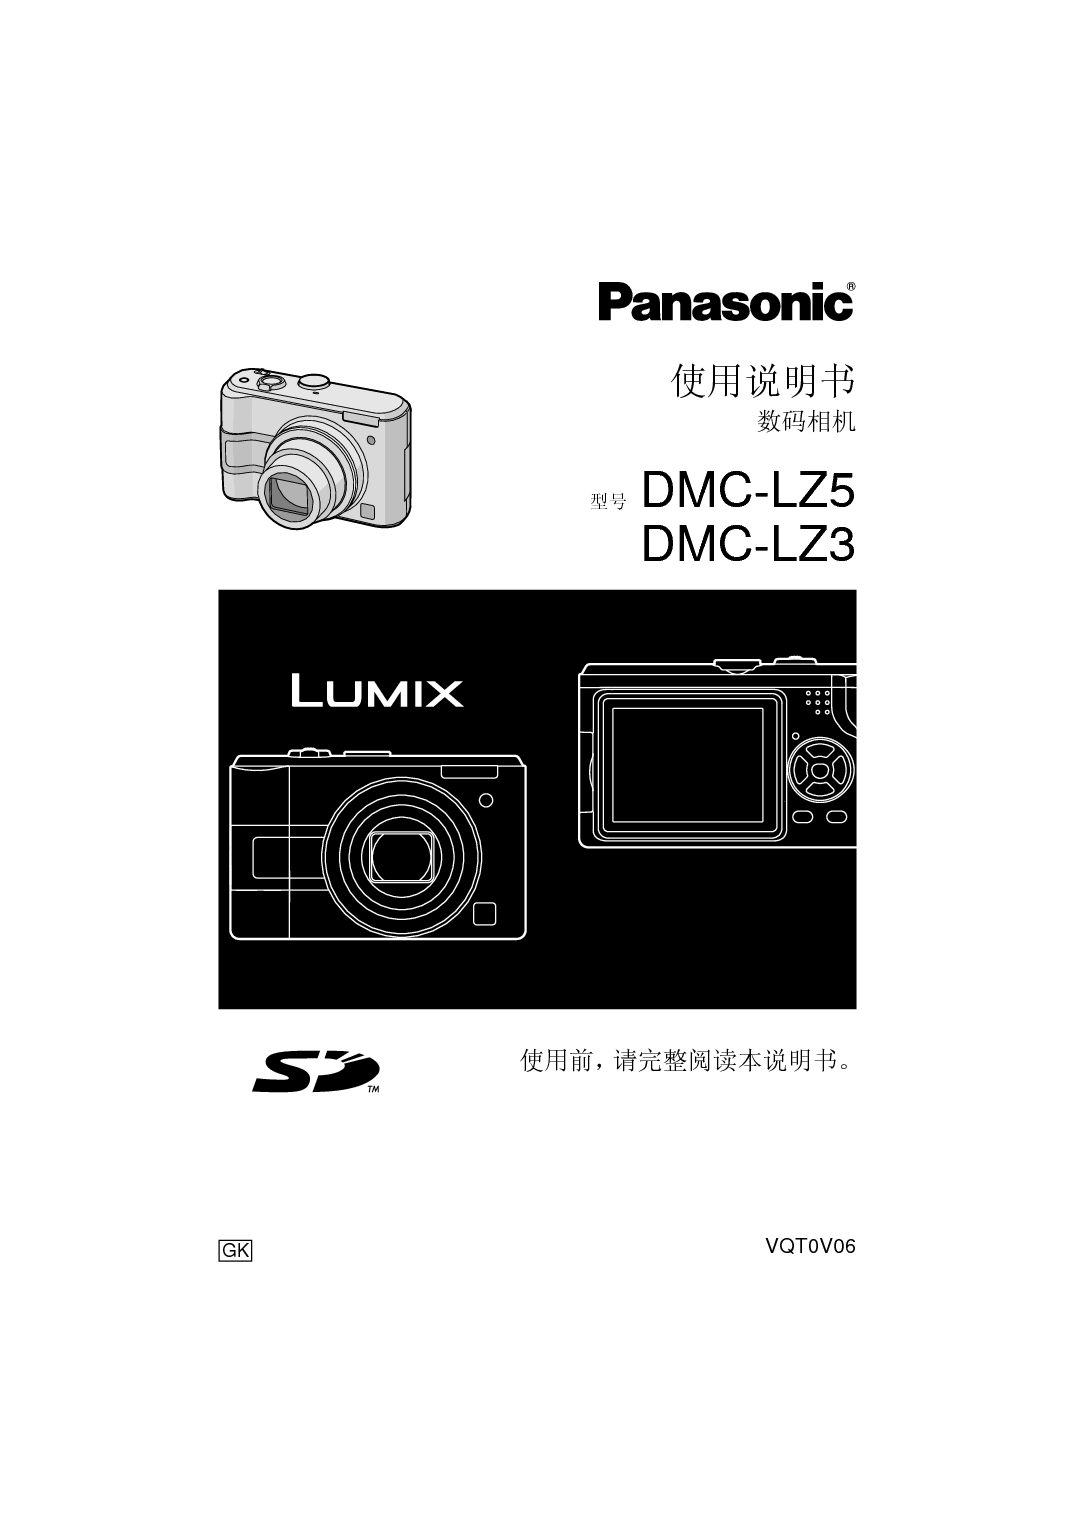 松下 Panasonic DMC-LZ3 说明书 封面